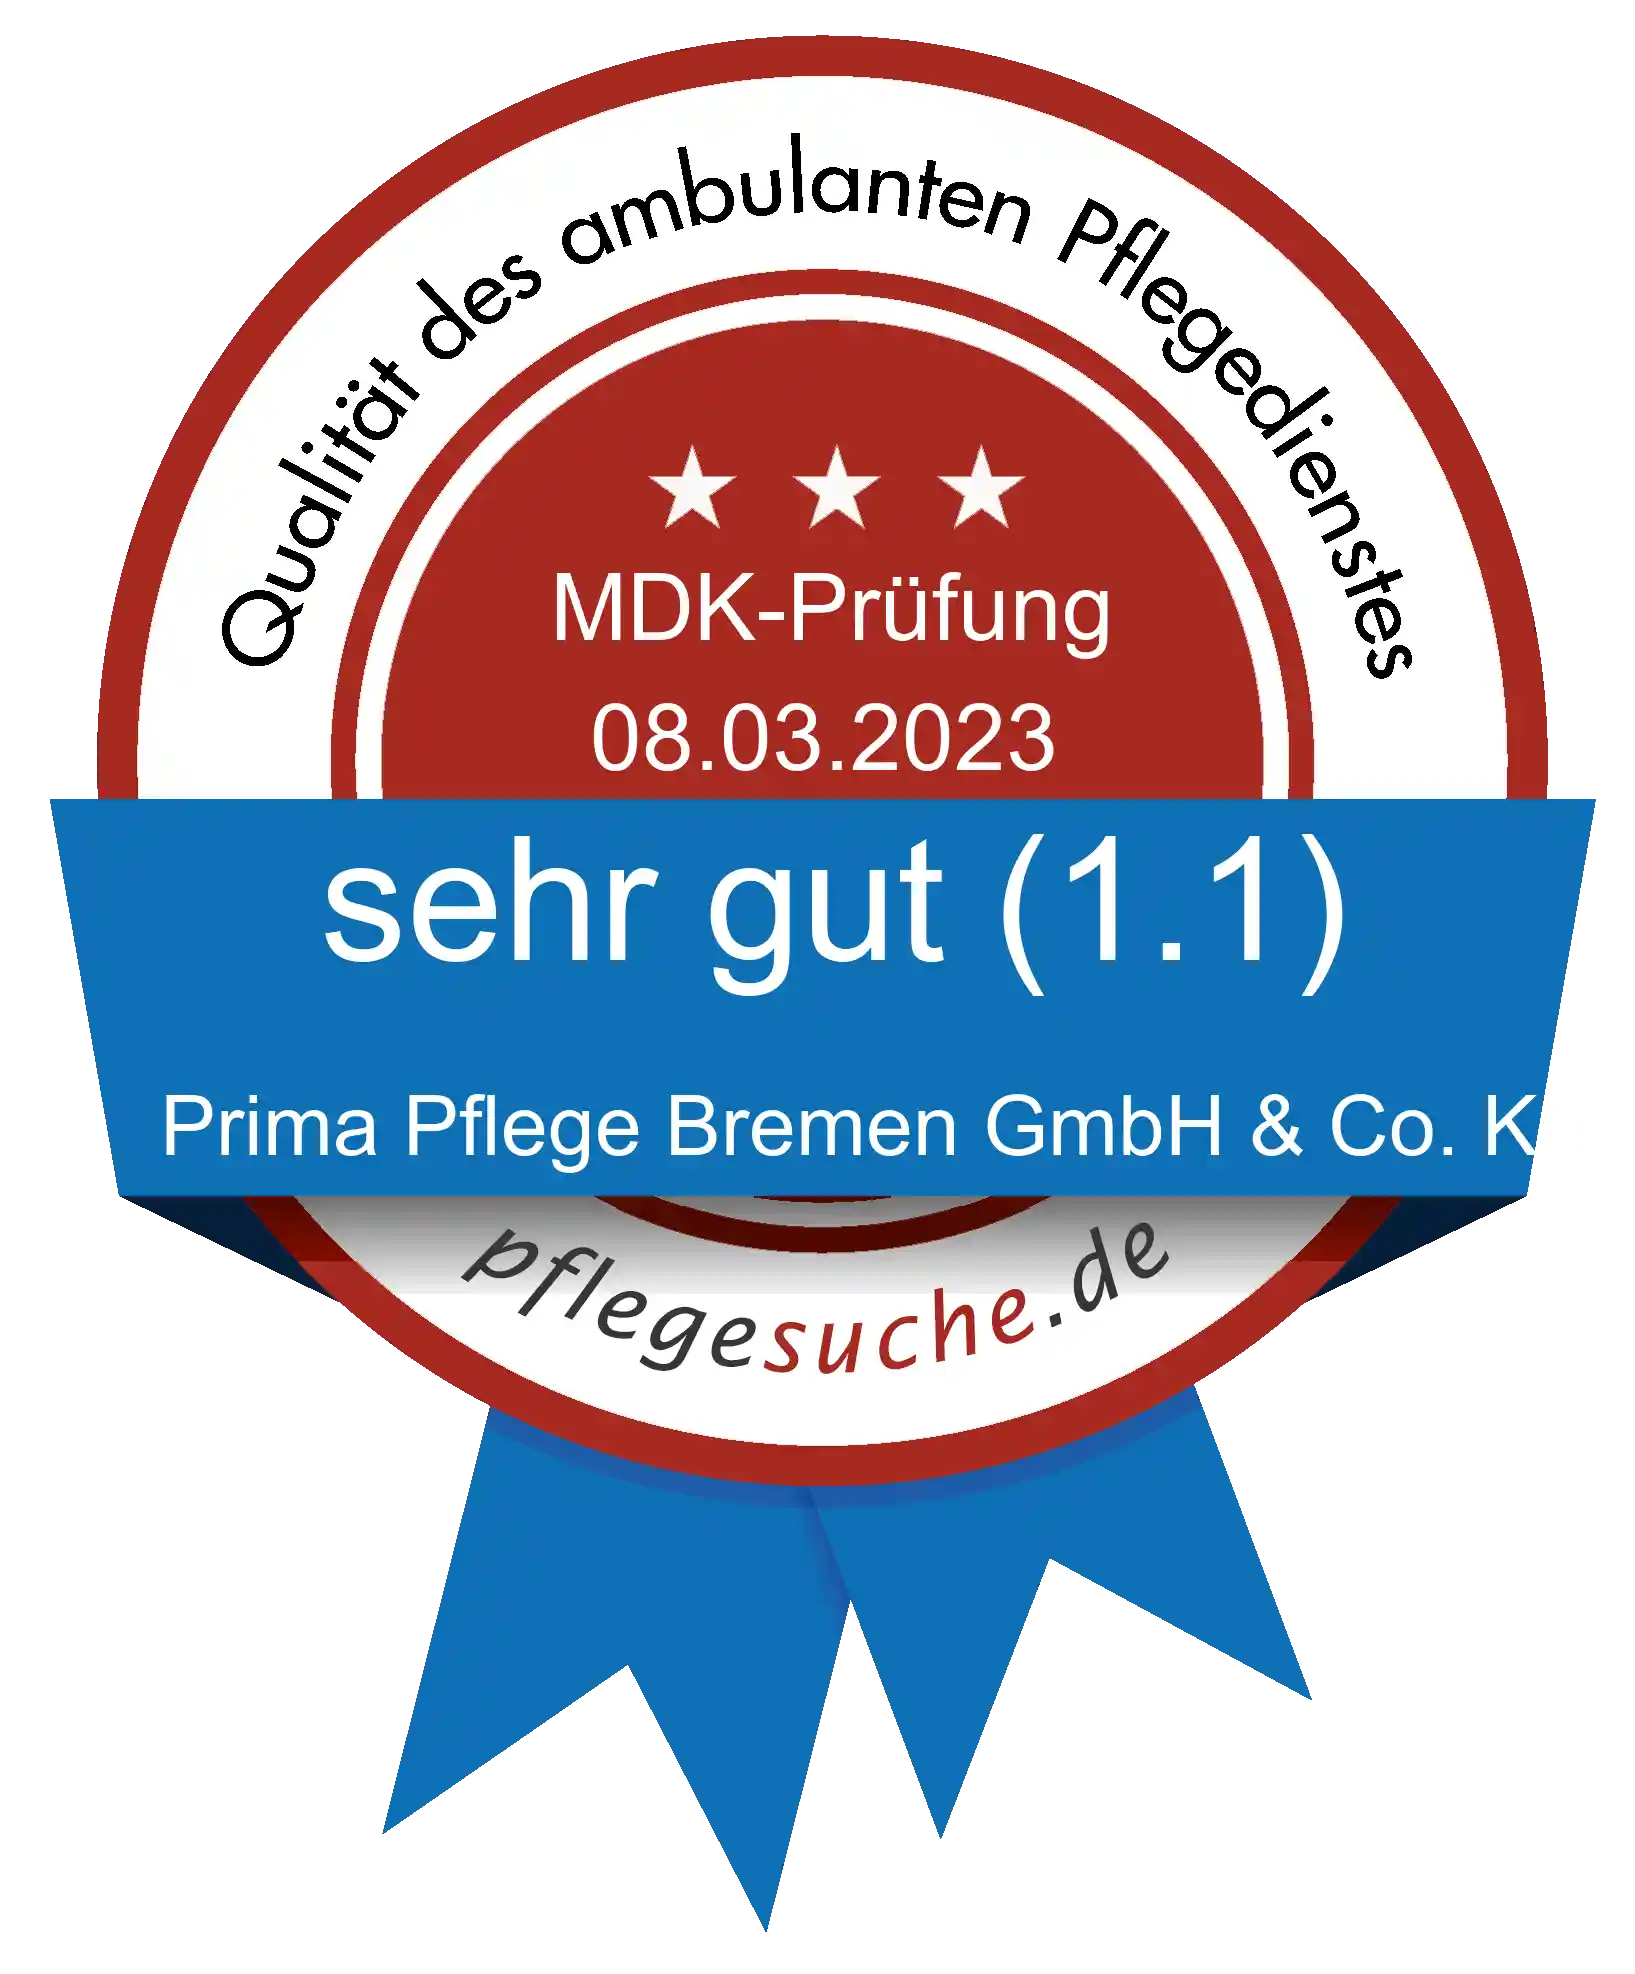 Siegel Benotung: Prima Pflege Bremen GmbH & Co. KG